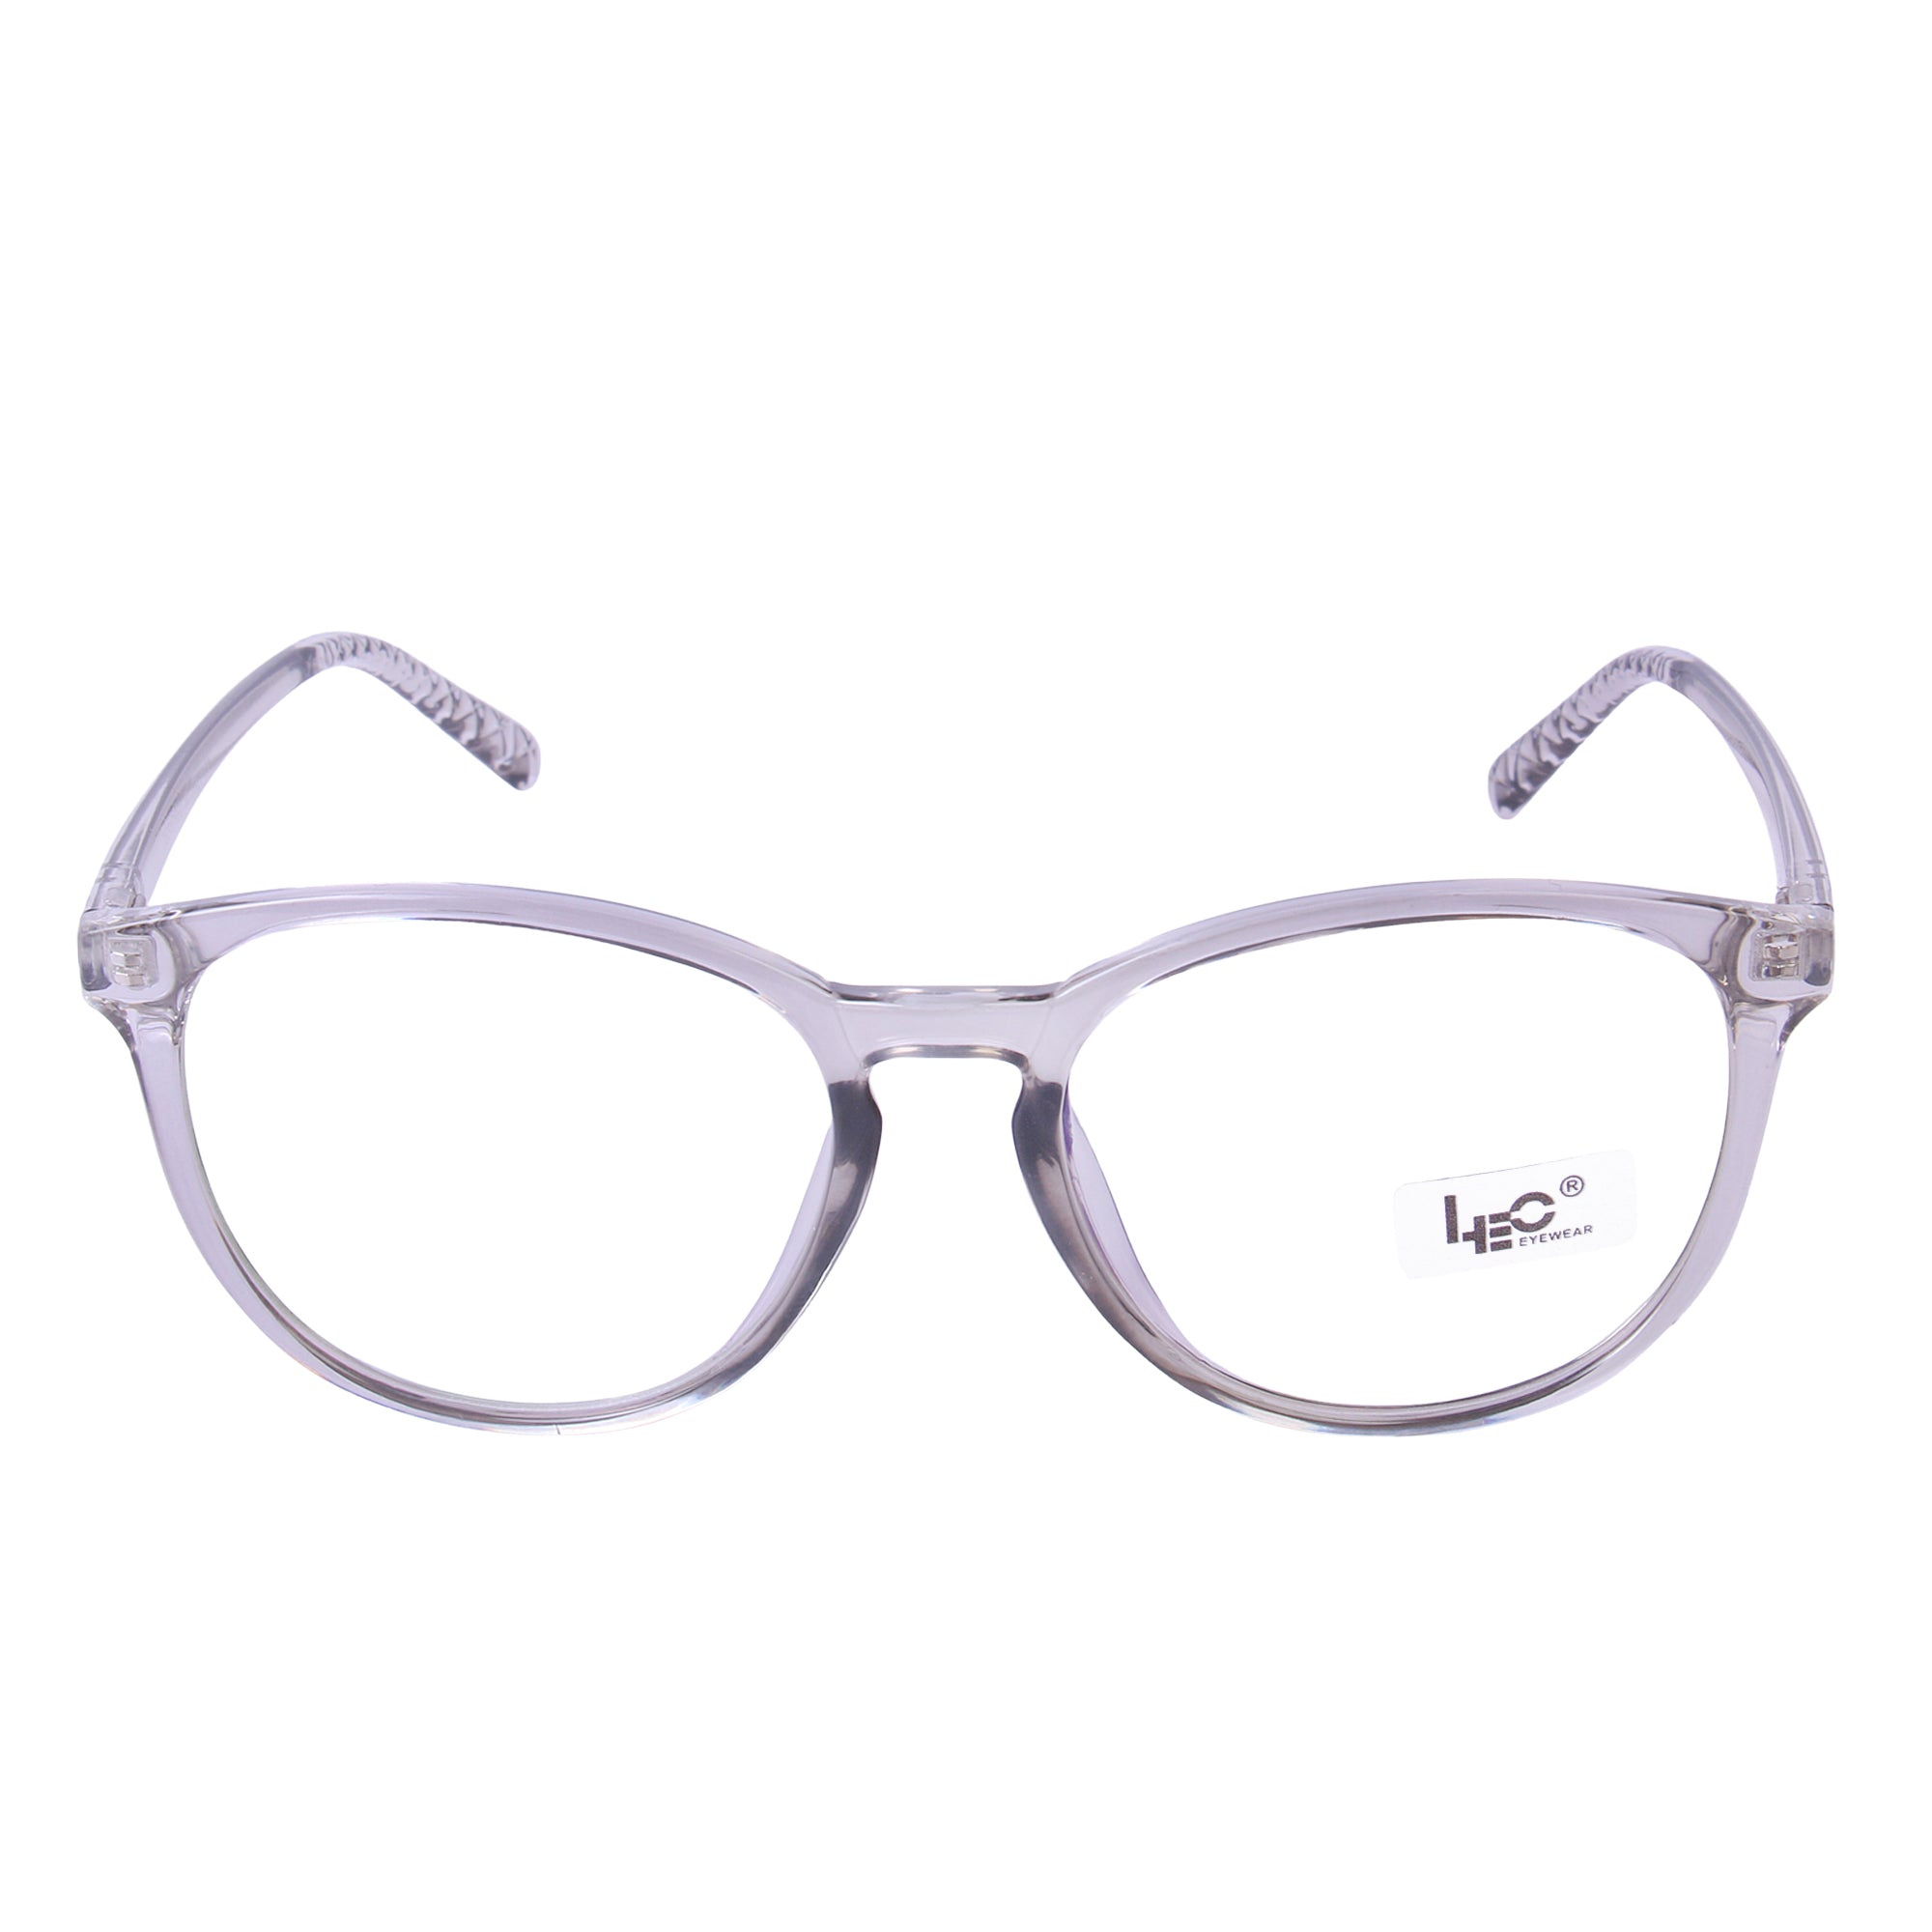 Grey Round Eyeglasses - L6015 c31